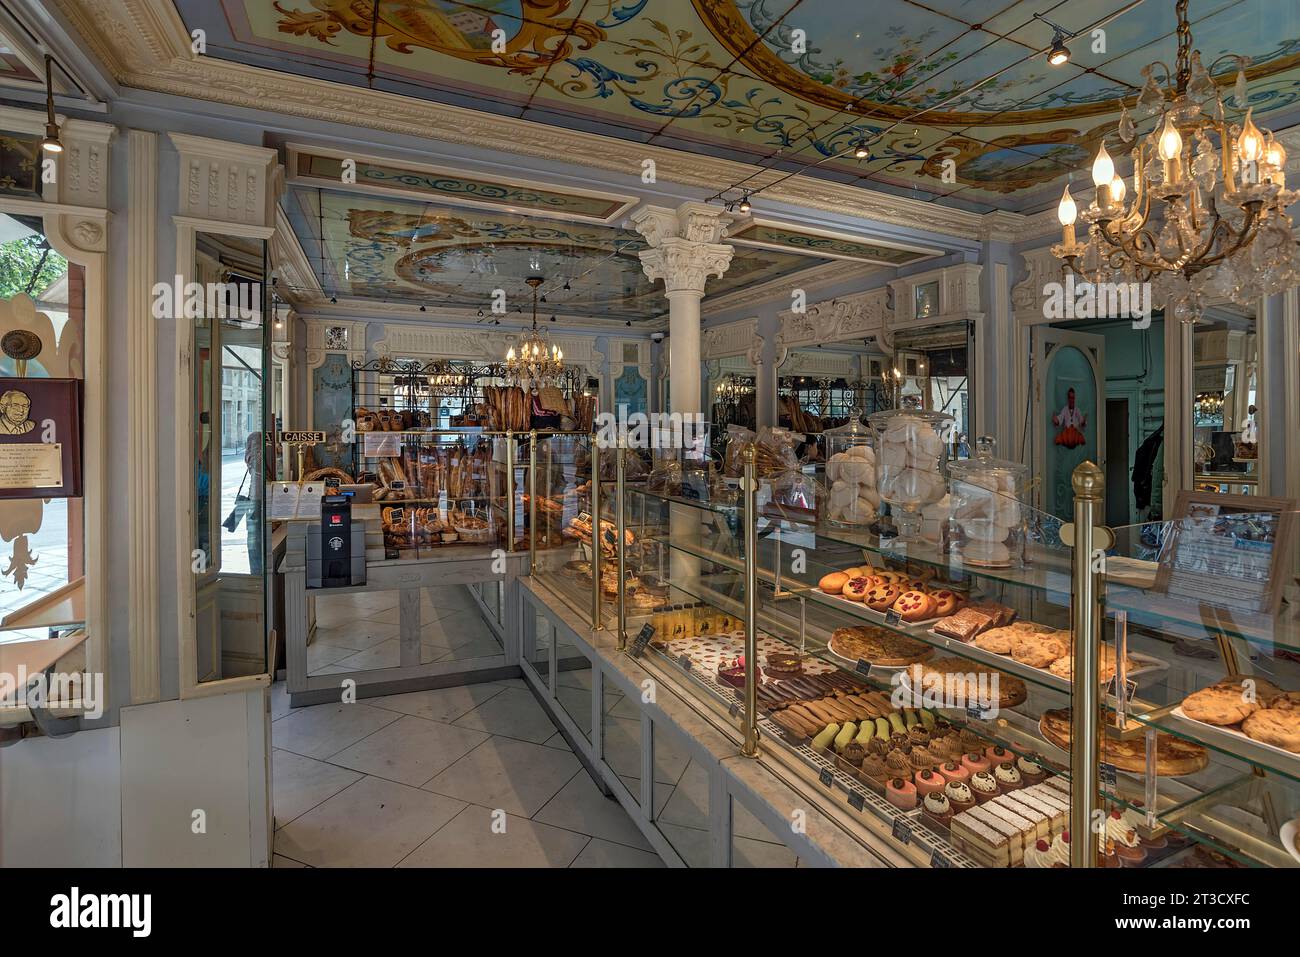 Sala di vendita di una panetteria e pasticceria francese tradizionale, Parigi, Francia Foto Stock